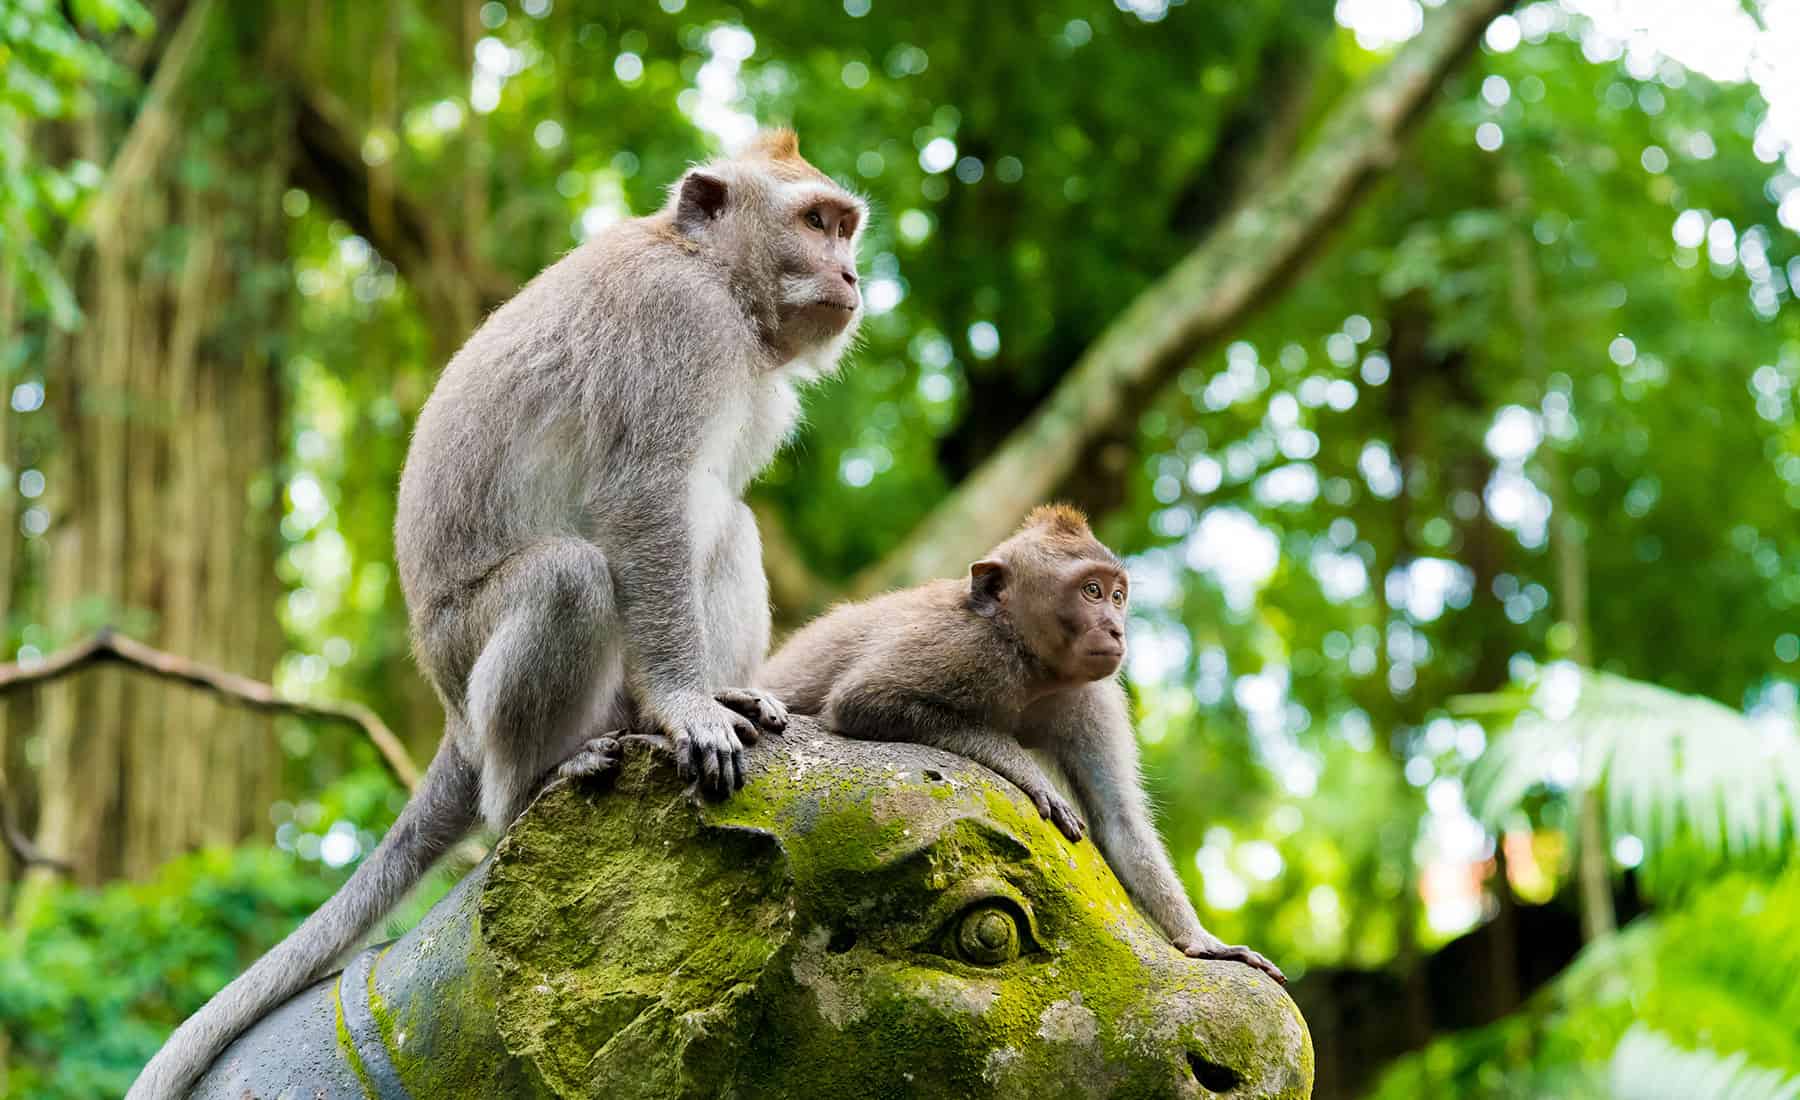 lịch trình tour du lịch tự túc những địa điểm du lịch ở bali - rừng khỉ thiêng ở Ubud